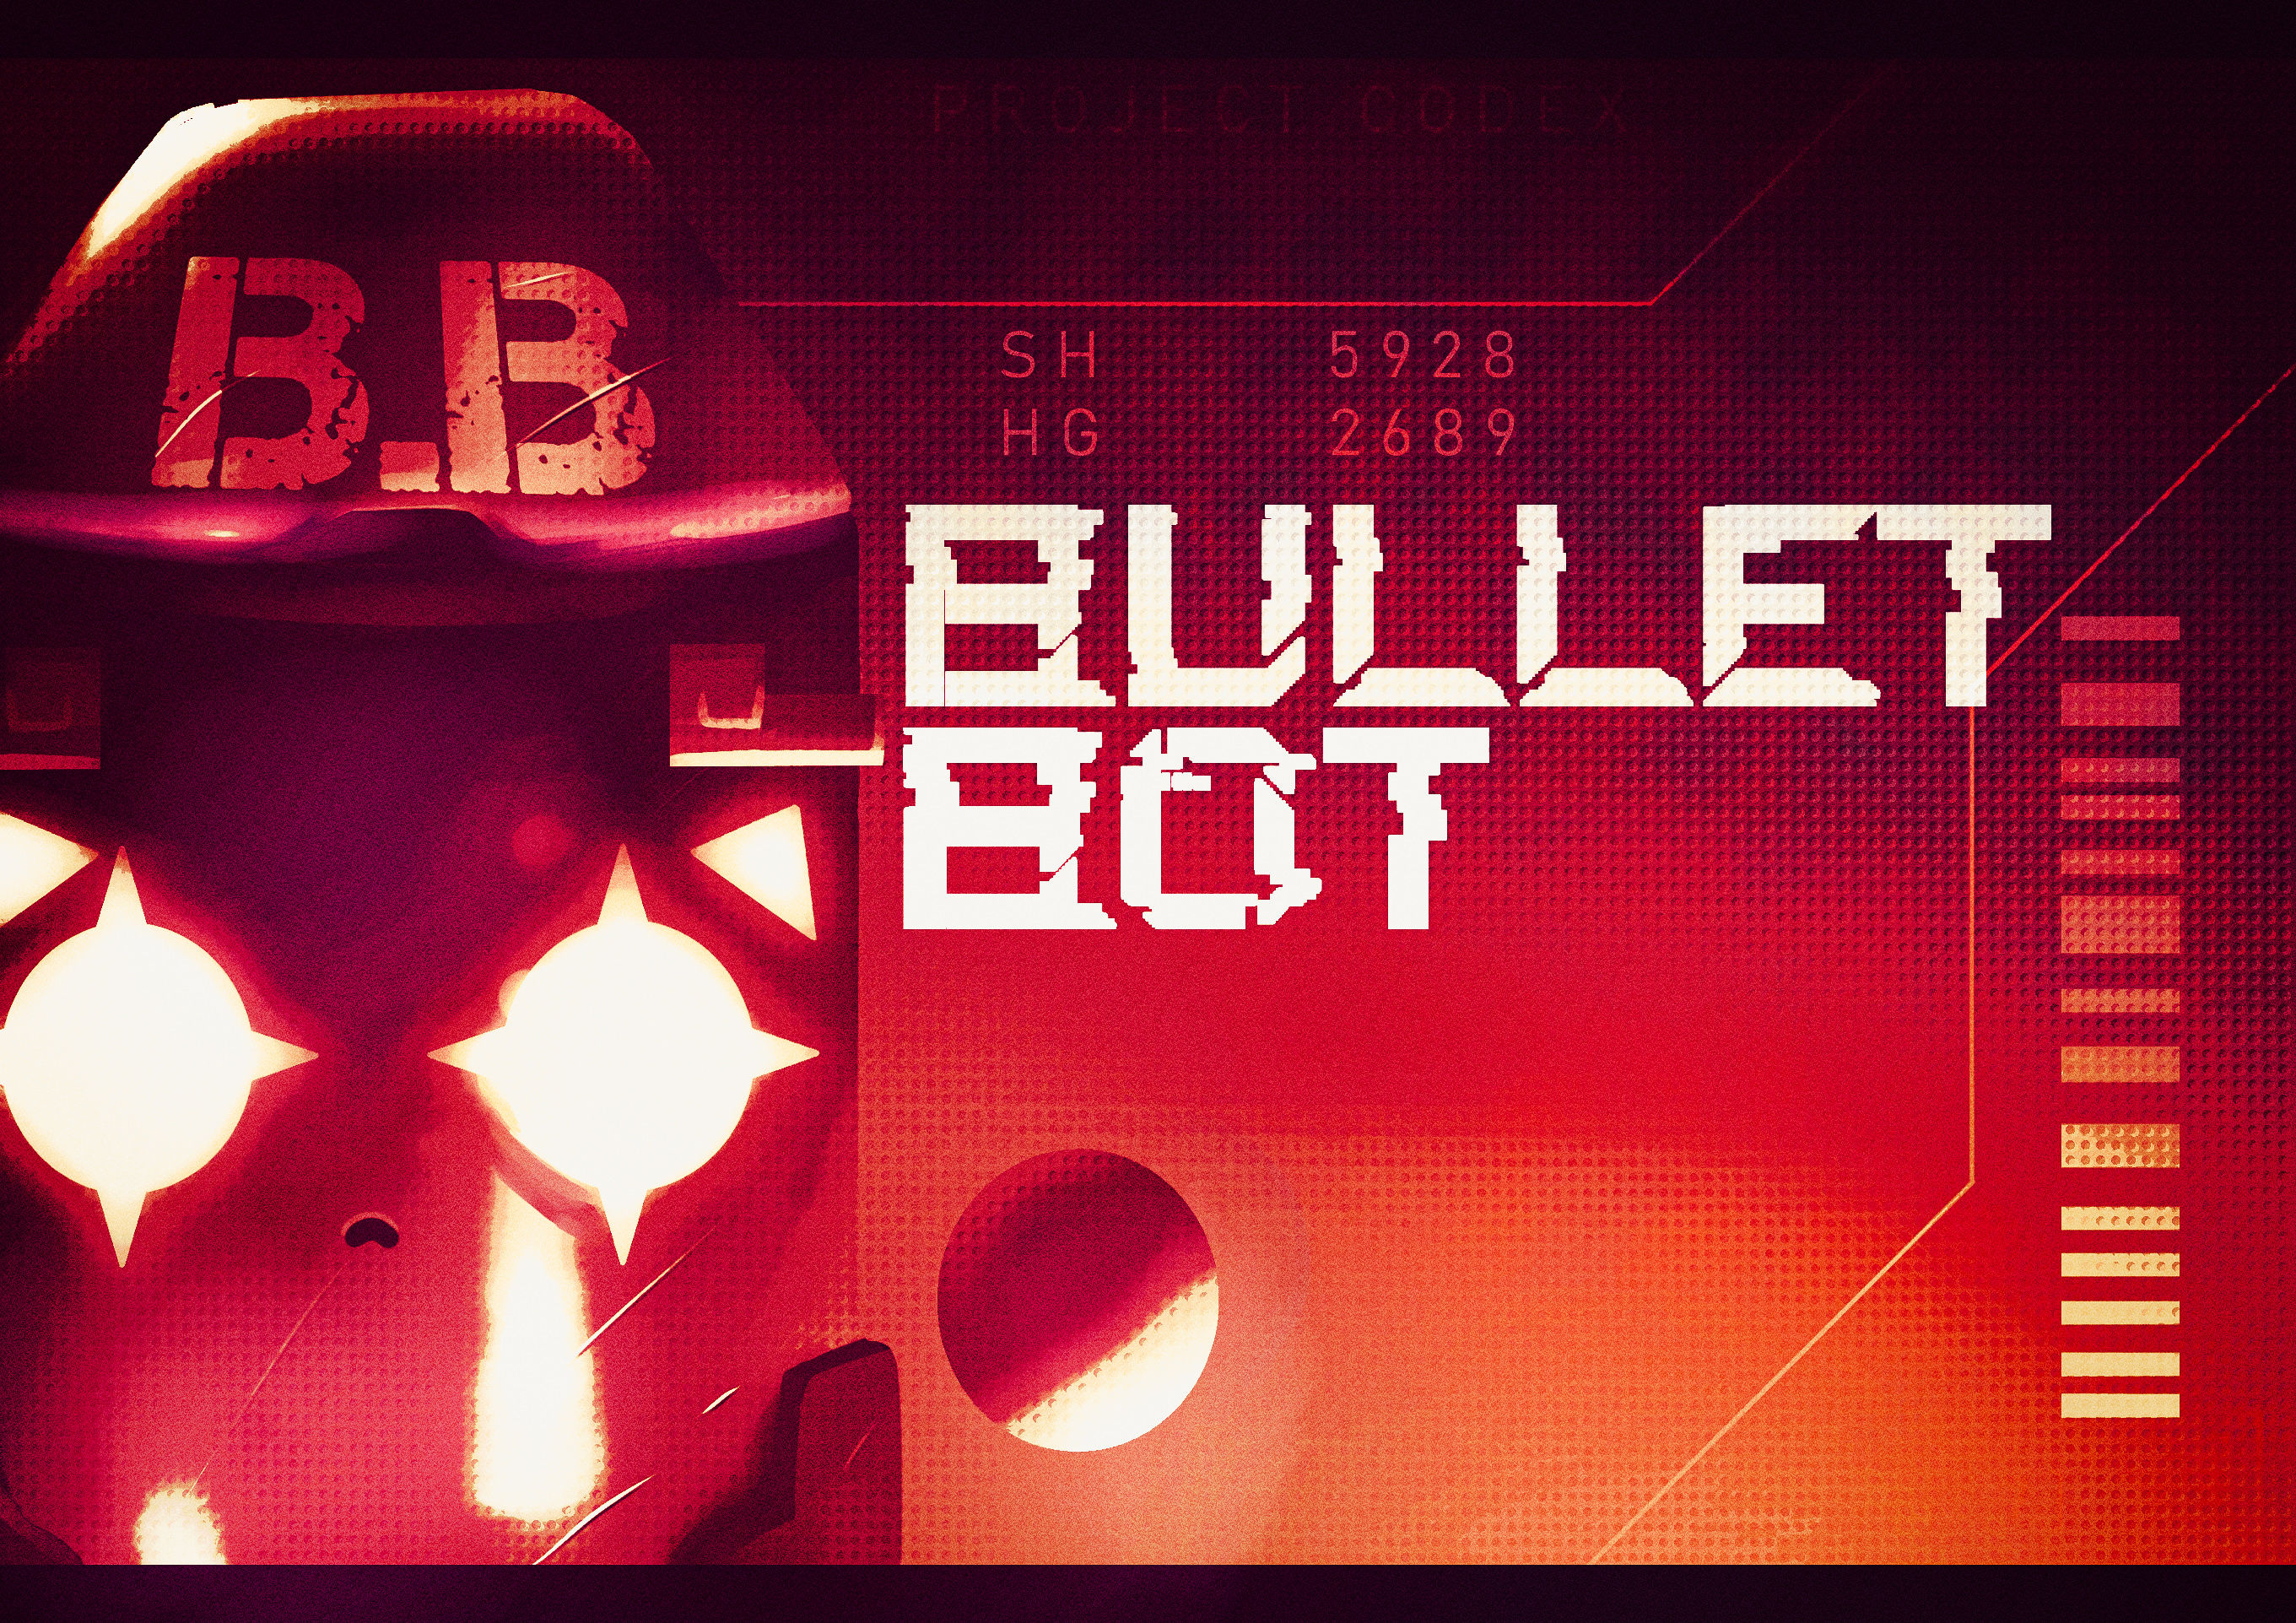 Agent Bullet Bot